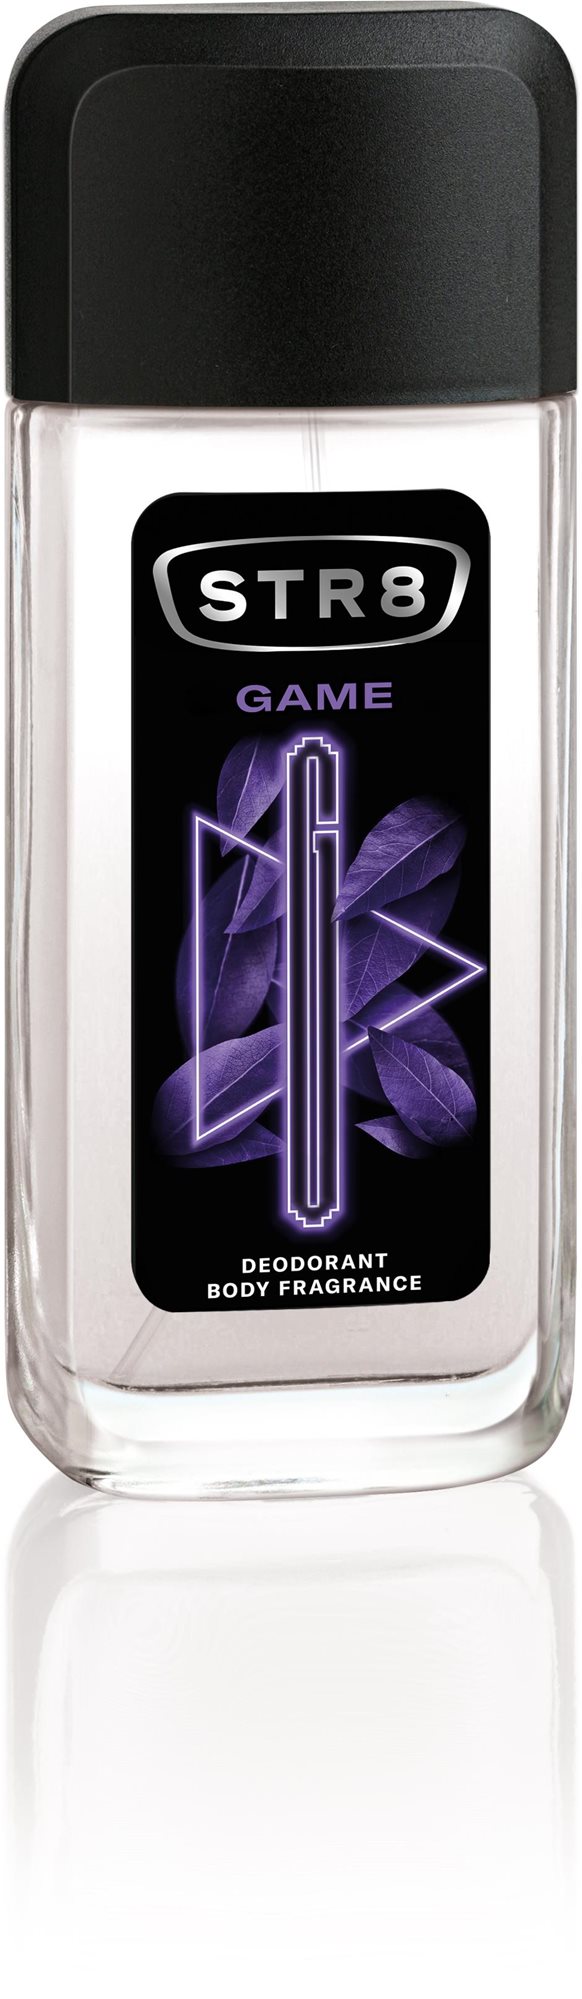 Dezodor STR8 Game Body fragrance 85 ml